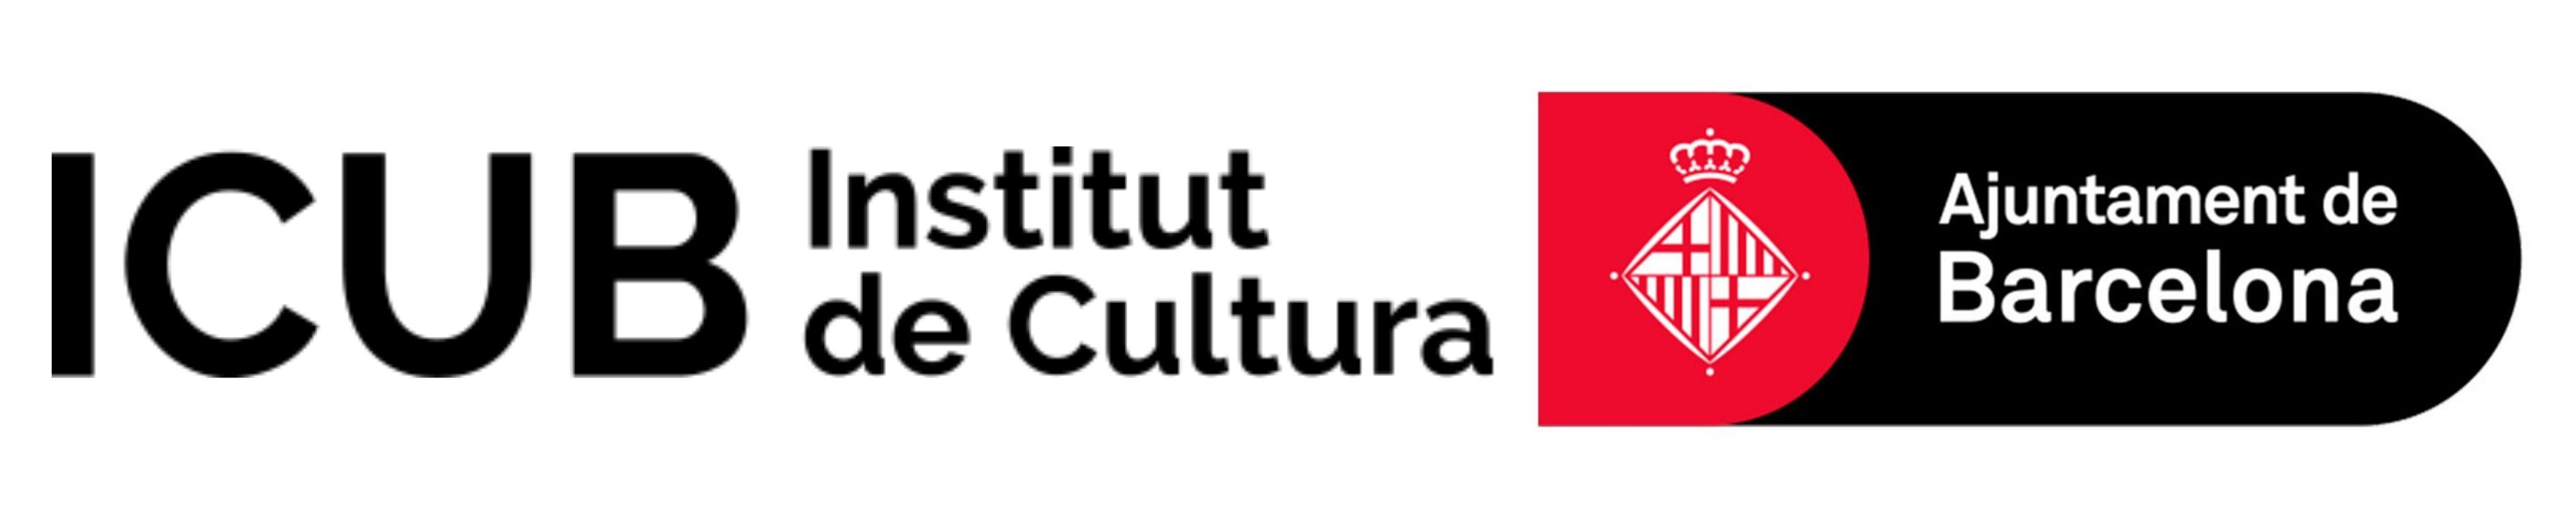 Institut de Cultura - Ajuntament de Barcelona